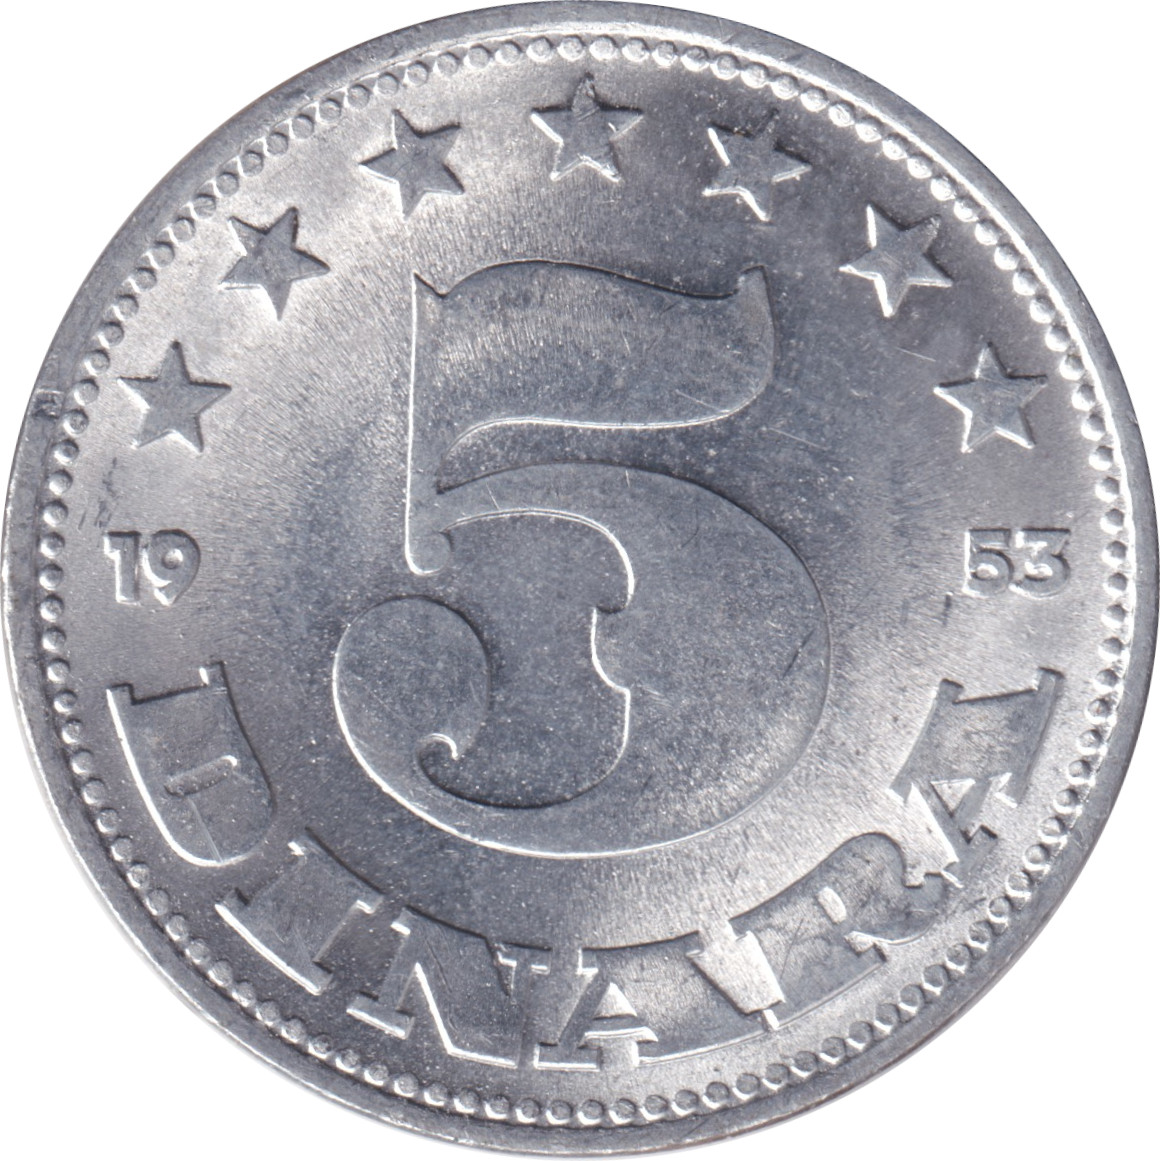 5 dinara - Emblème - Aluminium - République populaire